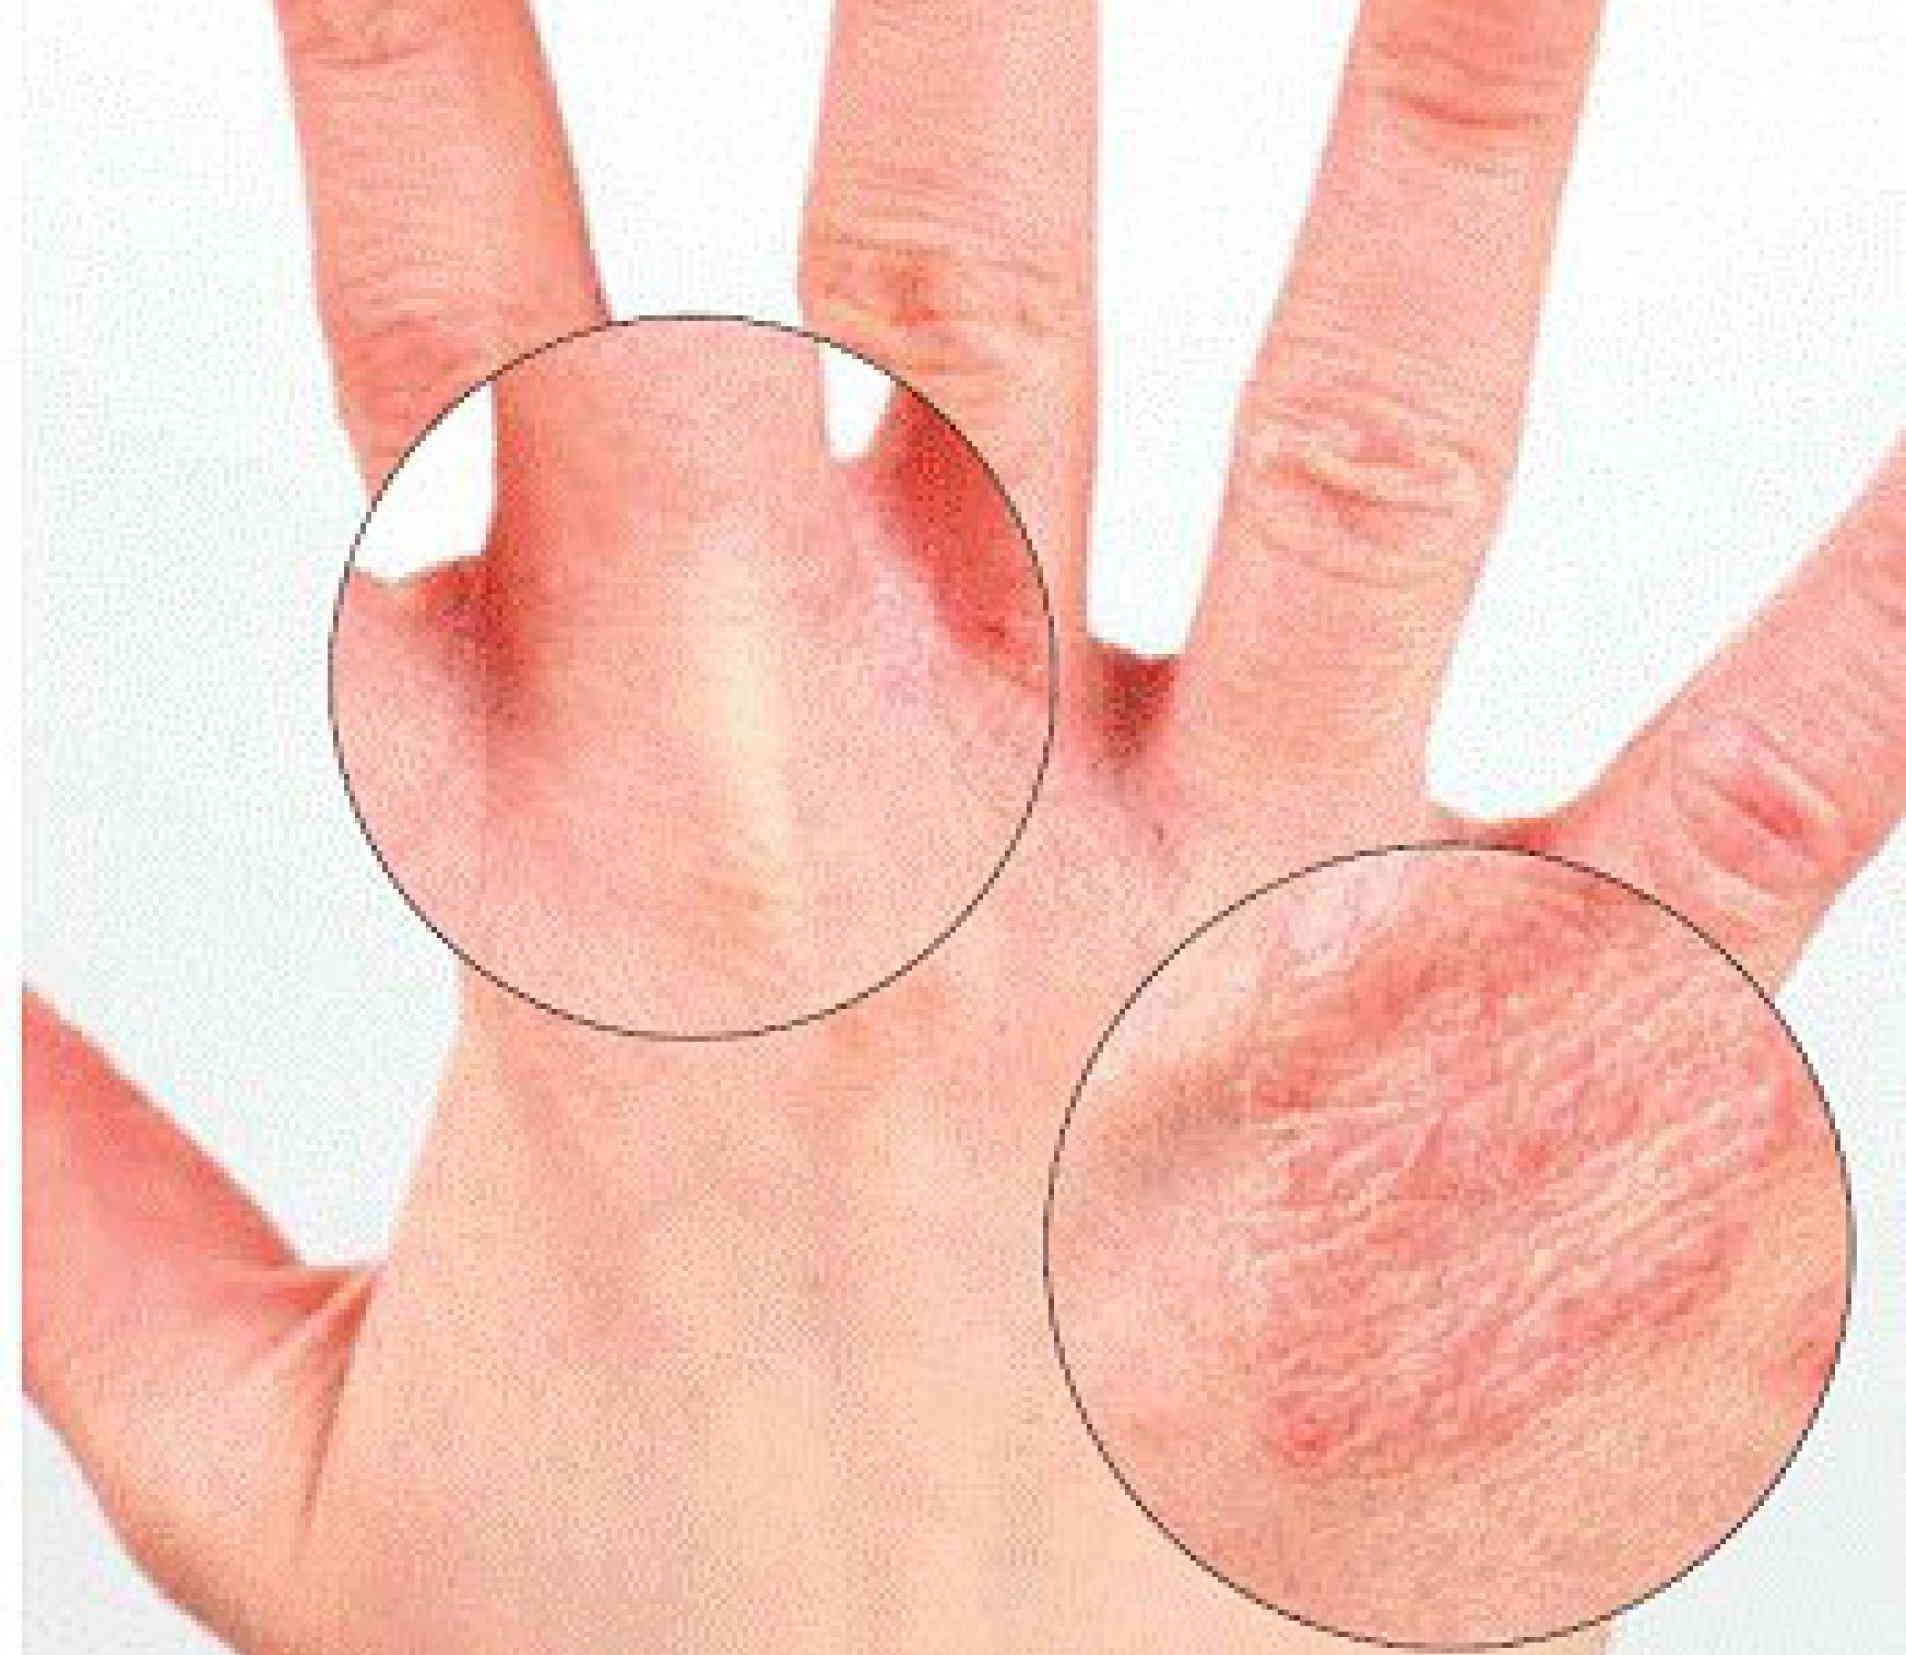 Дисгидротическая экзема кистей рук: причины и симптомы, лечение мазями и народными средствами